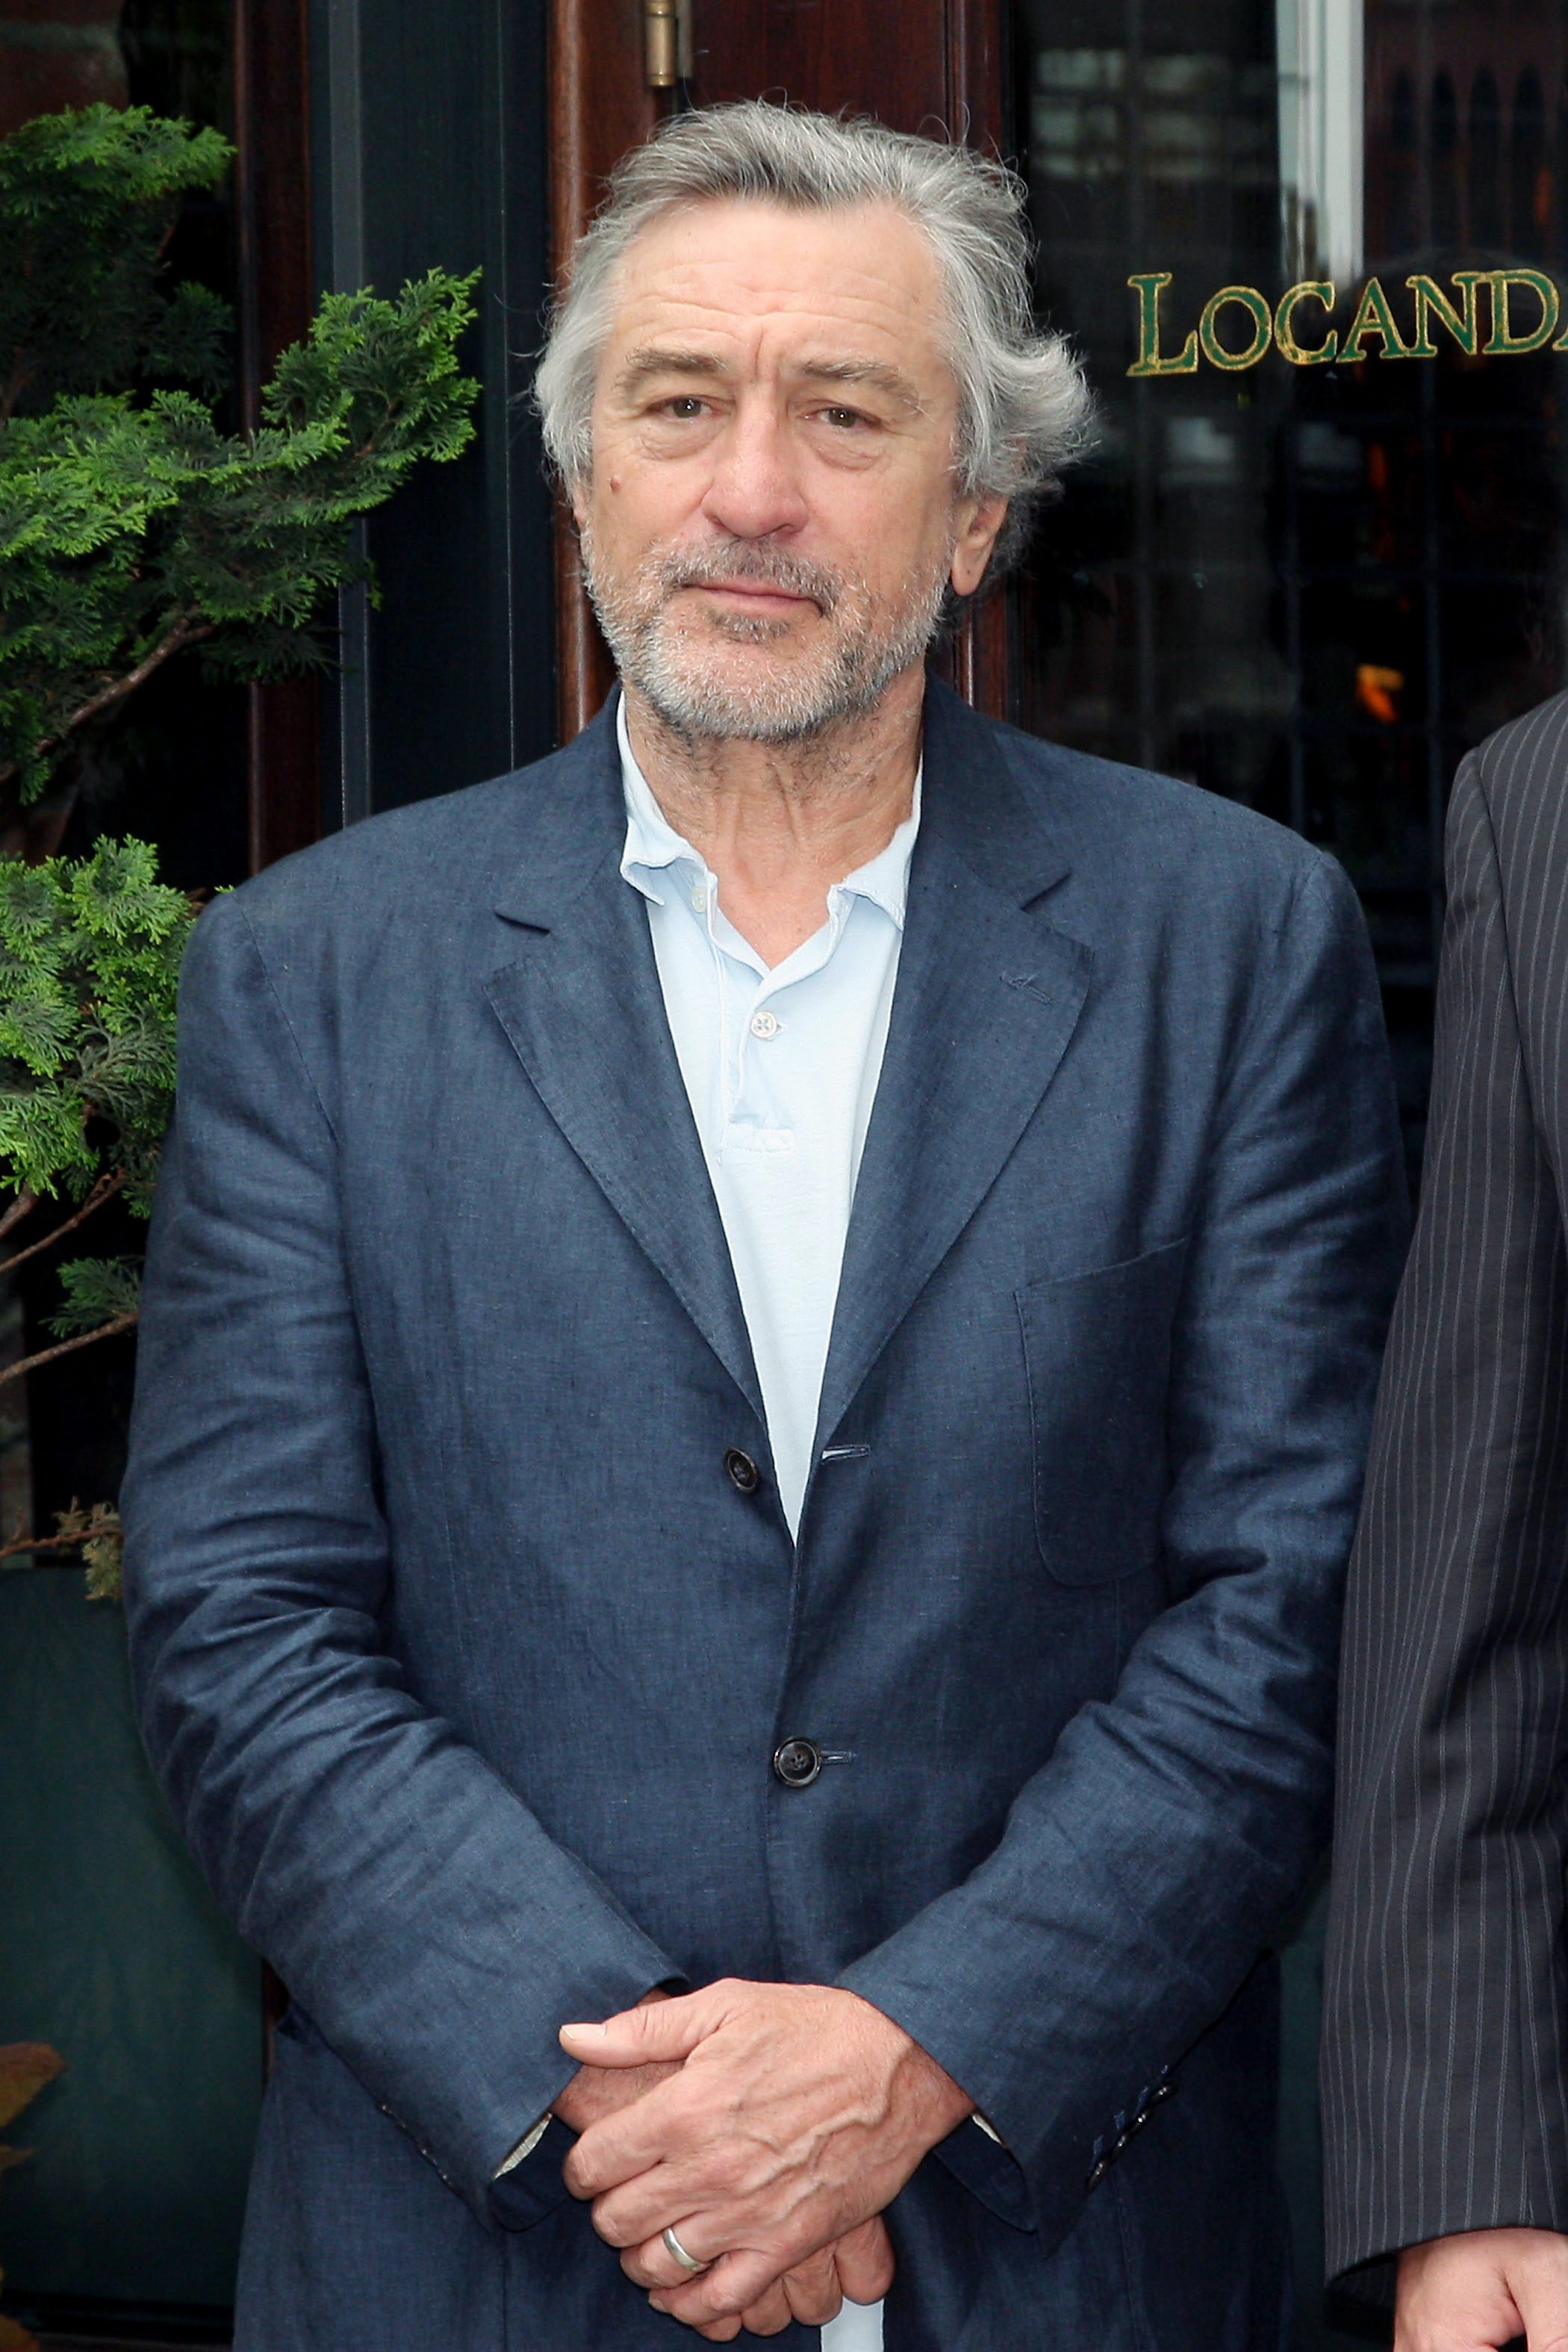 Robert De Niro, Bradley Cooper